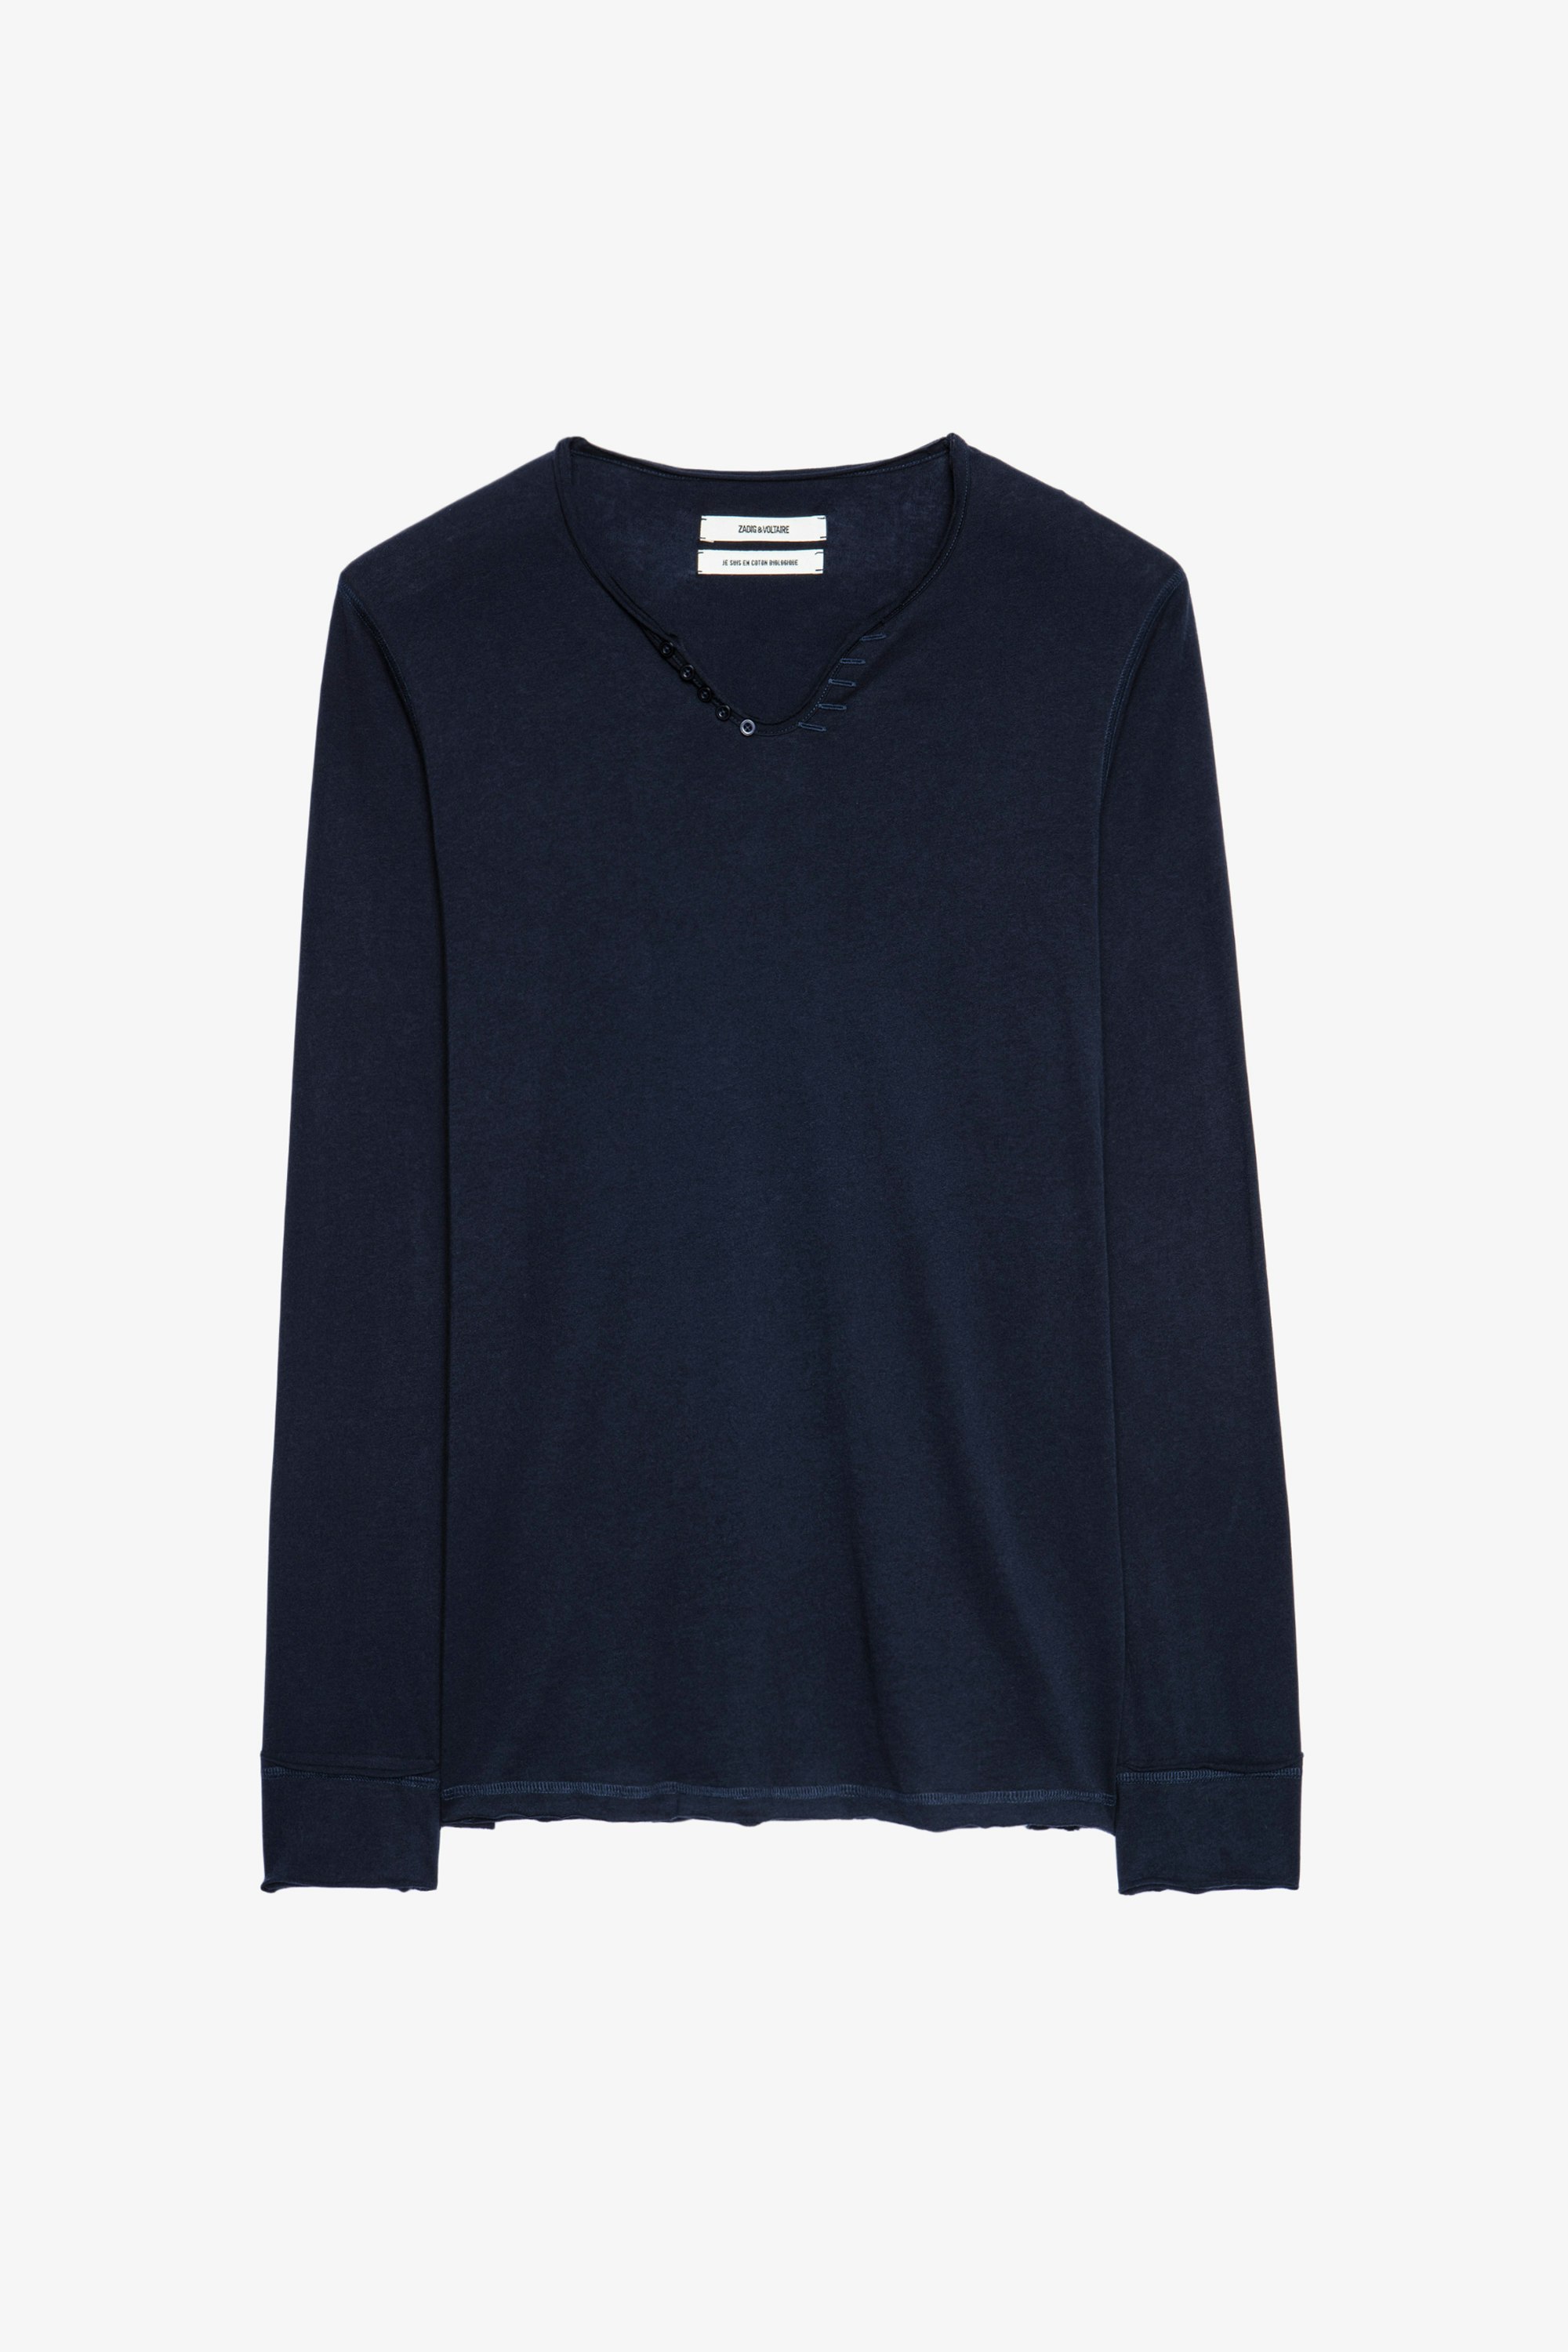 Monastir T-shirt Men’s blue cotton henley T-shirt